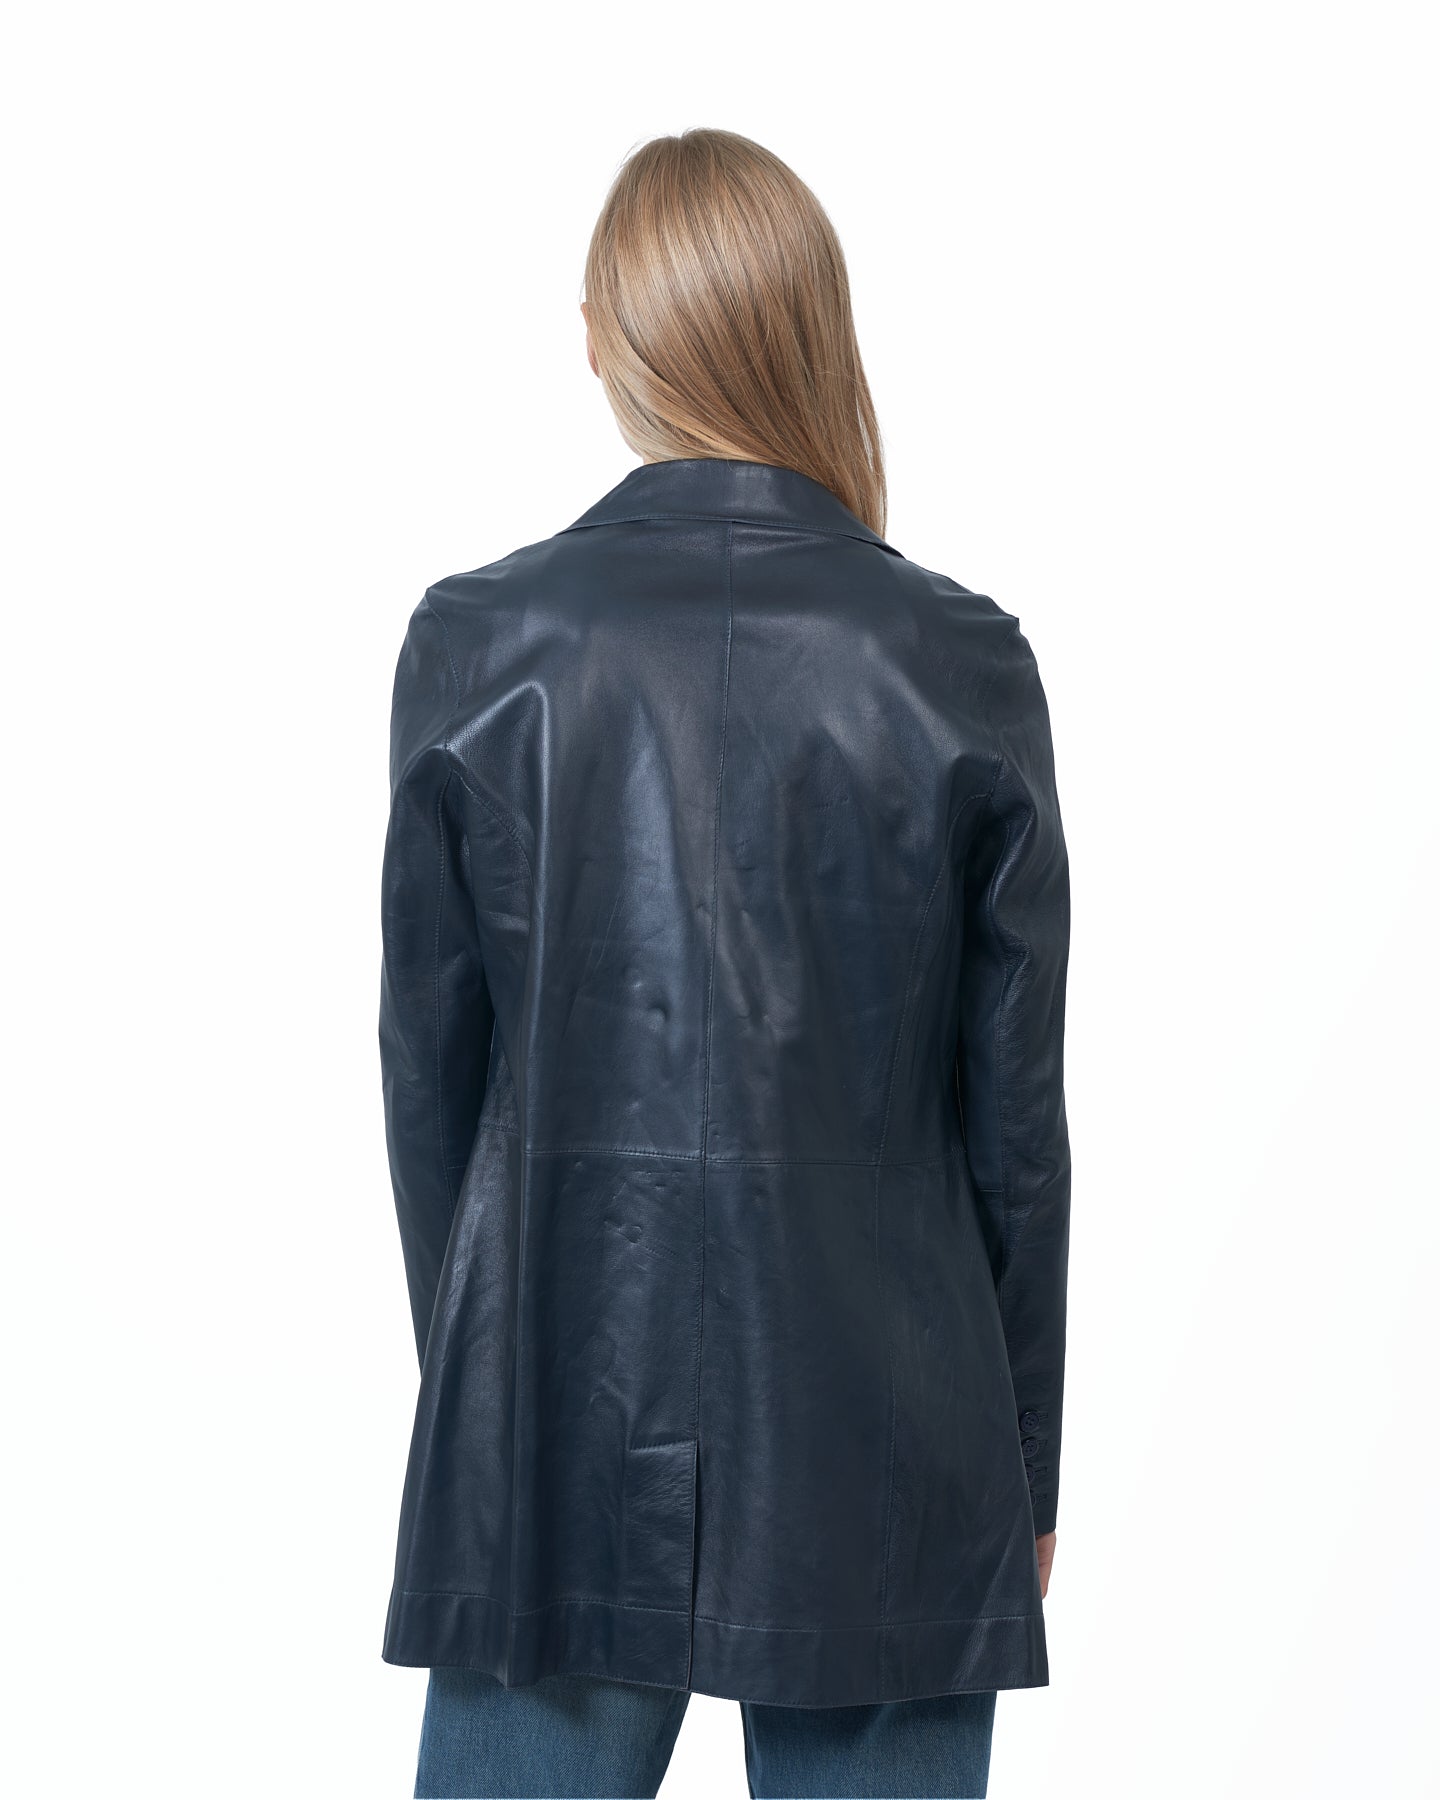 Marlene Vintage Leather Jacket Midnight